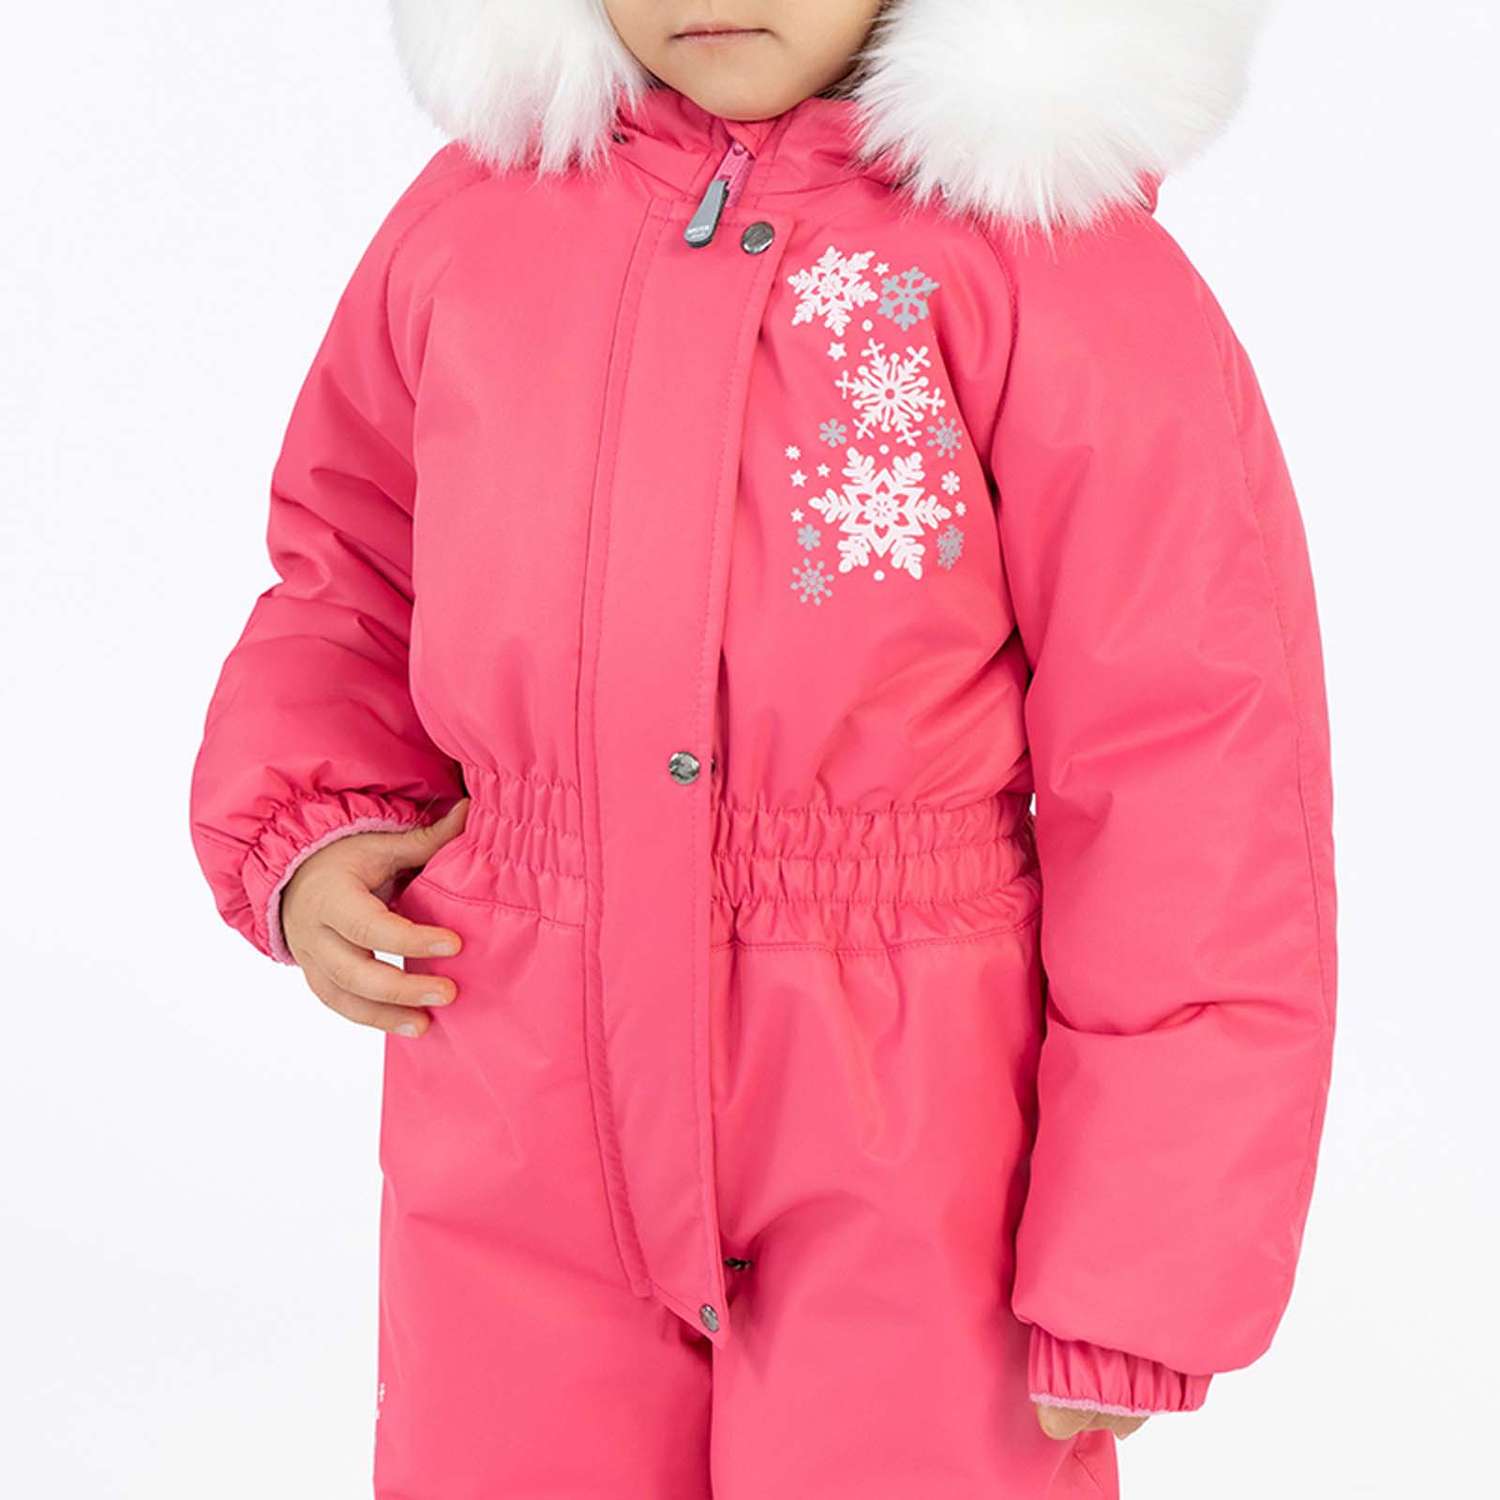 Комбинезон Arctic kids 30-019/1 розовый - фото 5